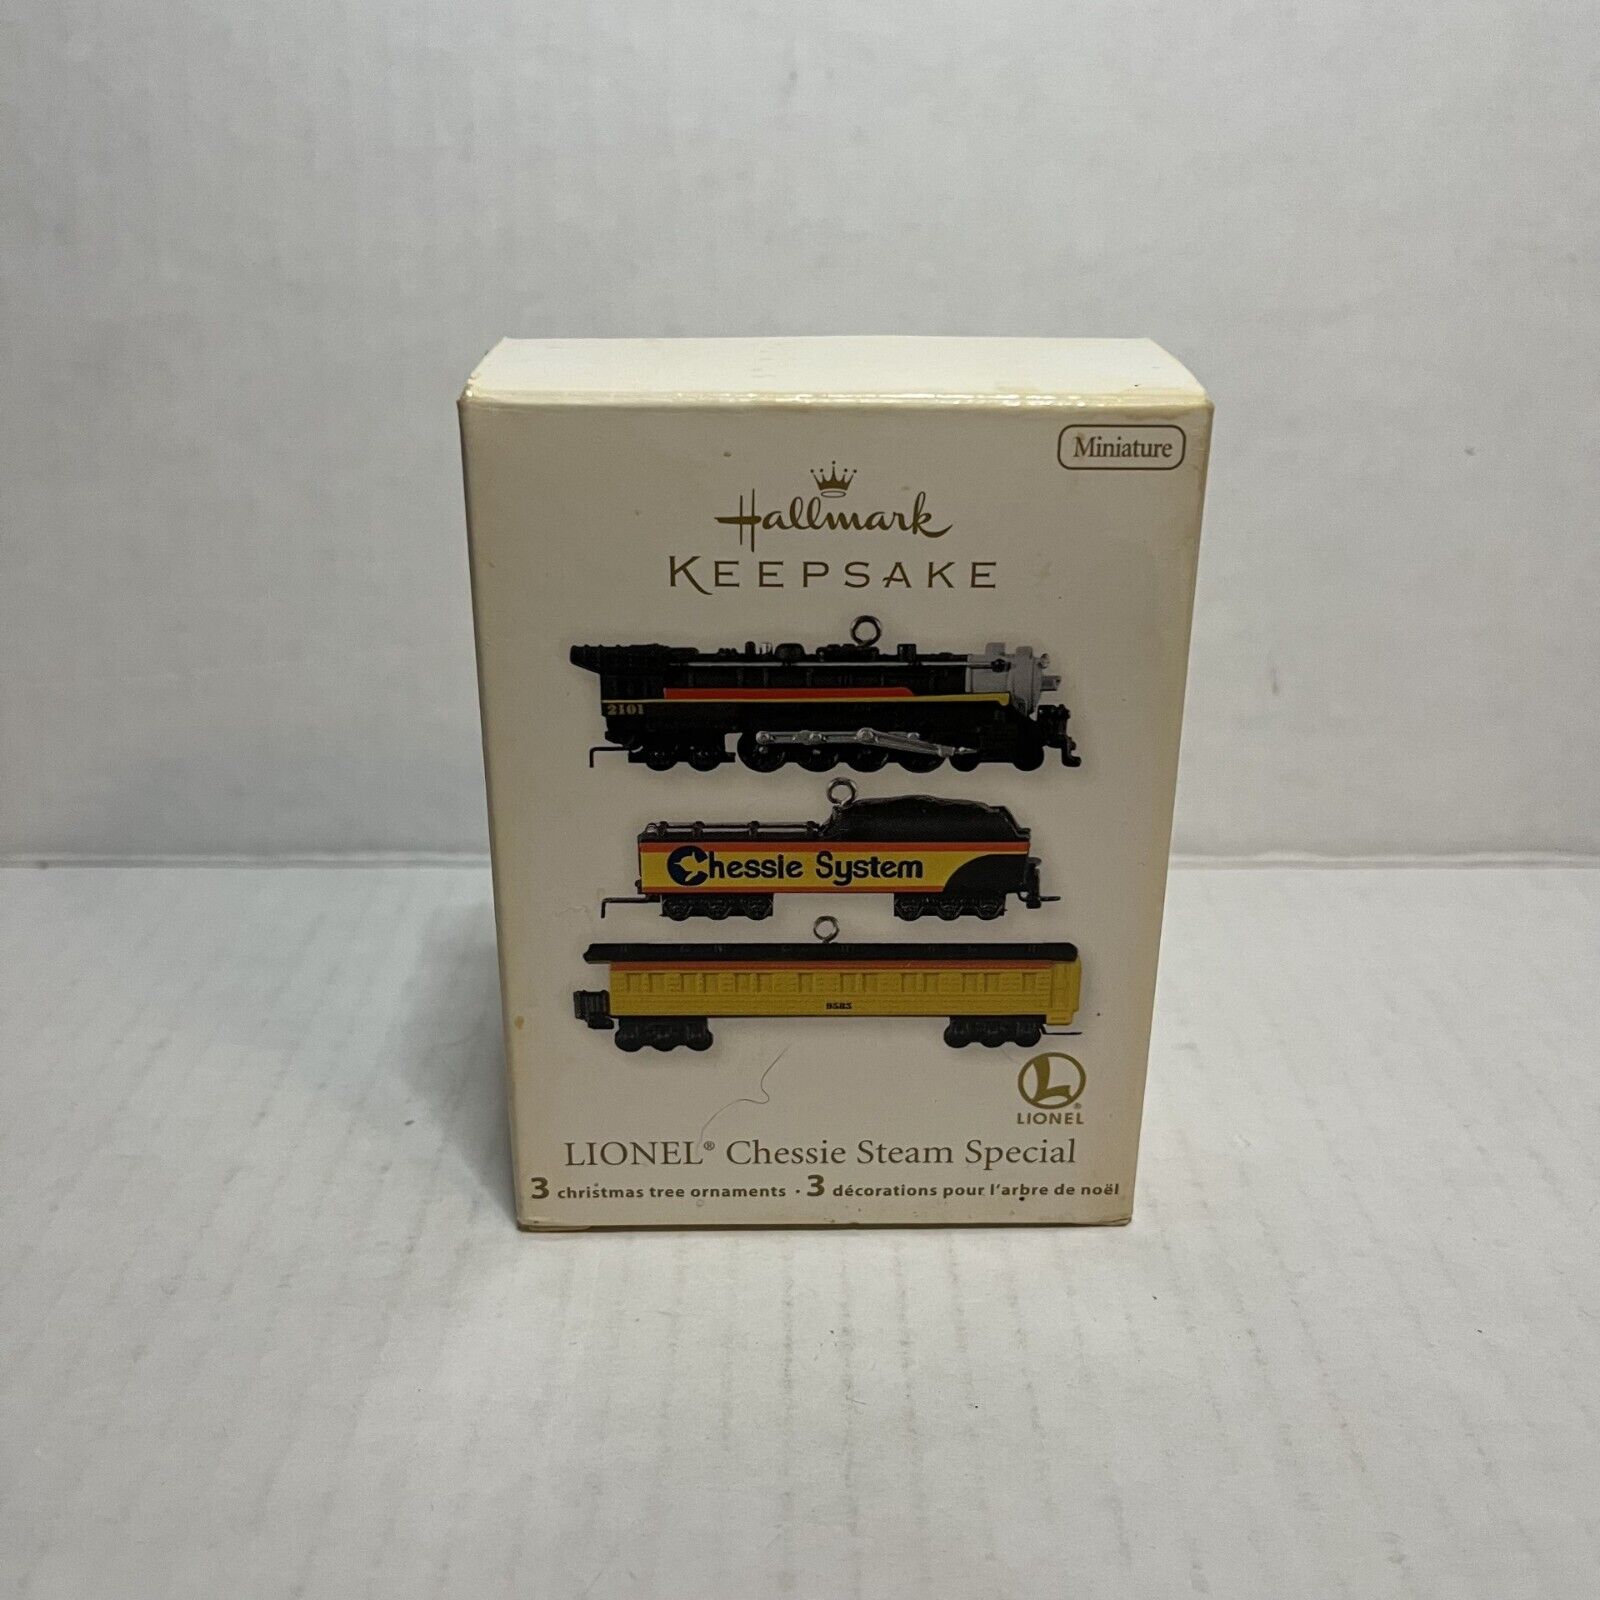 Hallmark Keepsake 2012 LIONEL Chessie Steam Special Miniature Train Ornaments